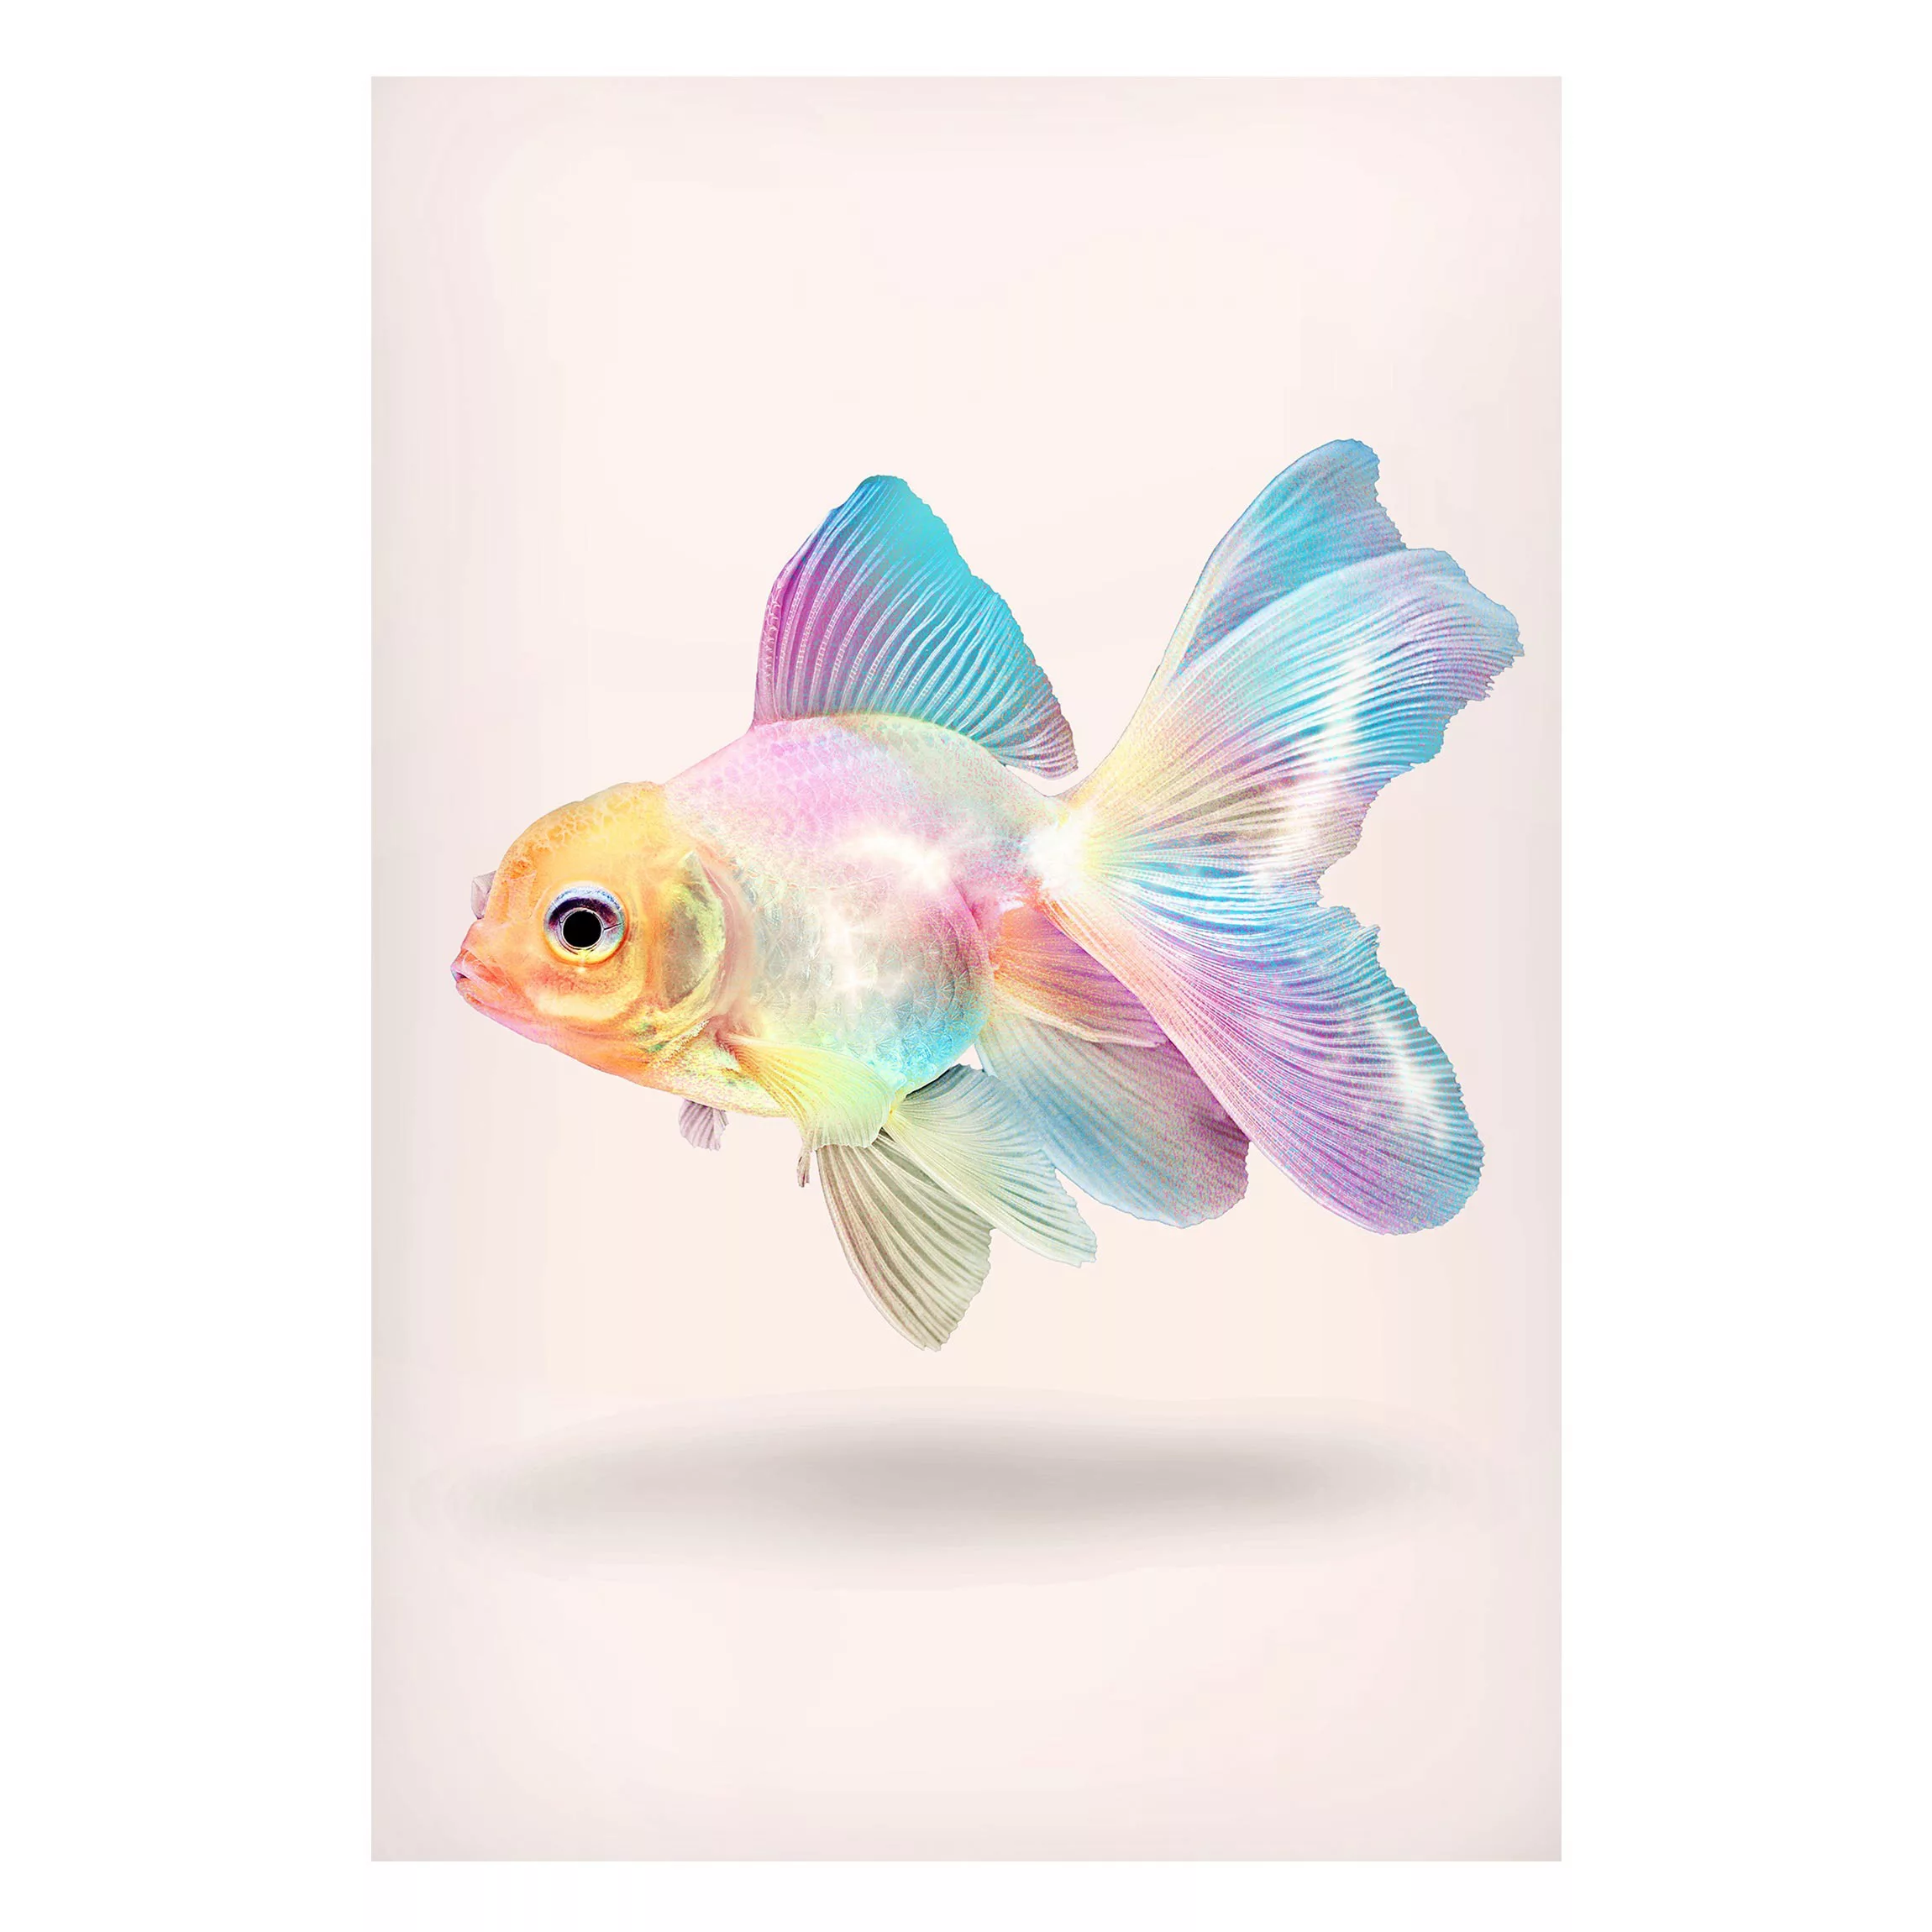 Magnettafel Tiere - Hochformat 2:3 Fisch in Pastell günstig online kaufen